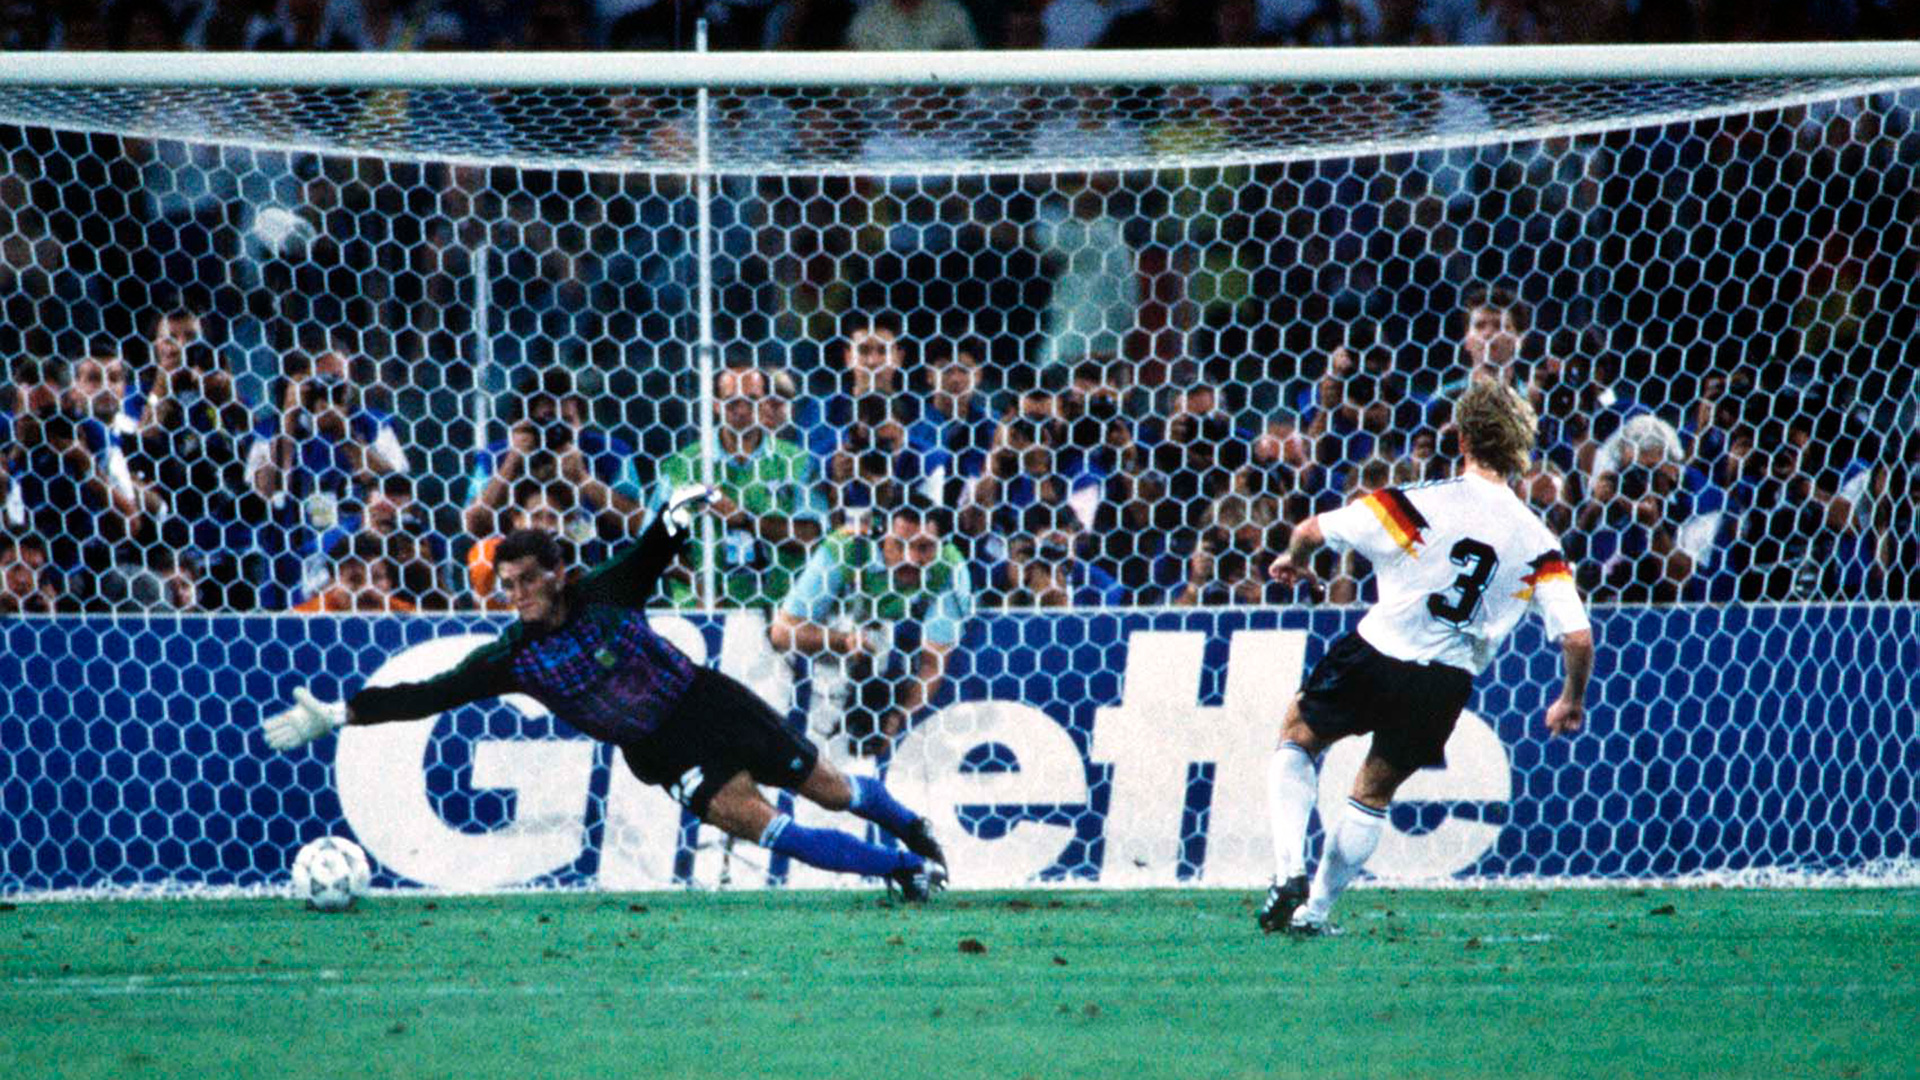 Andreas Brehme convierte el gol de penal y bate a Sergio Goycochea en la final que Alemania le ganó a la Argentina 1-0 en Italia 1990 (Photo by Colorsport/Shutterstock)